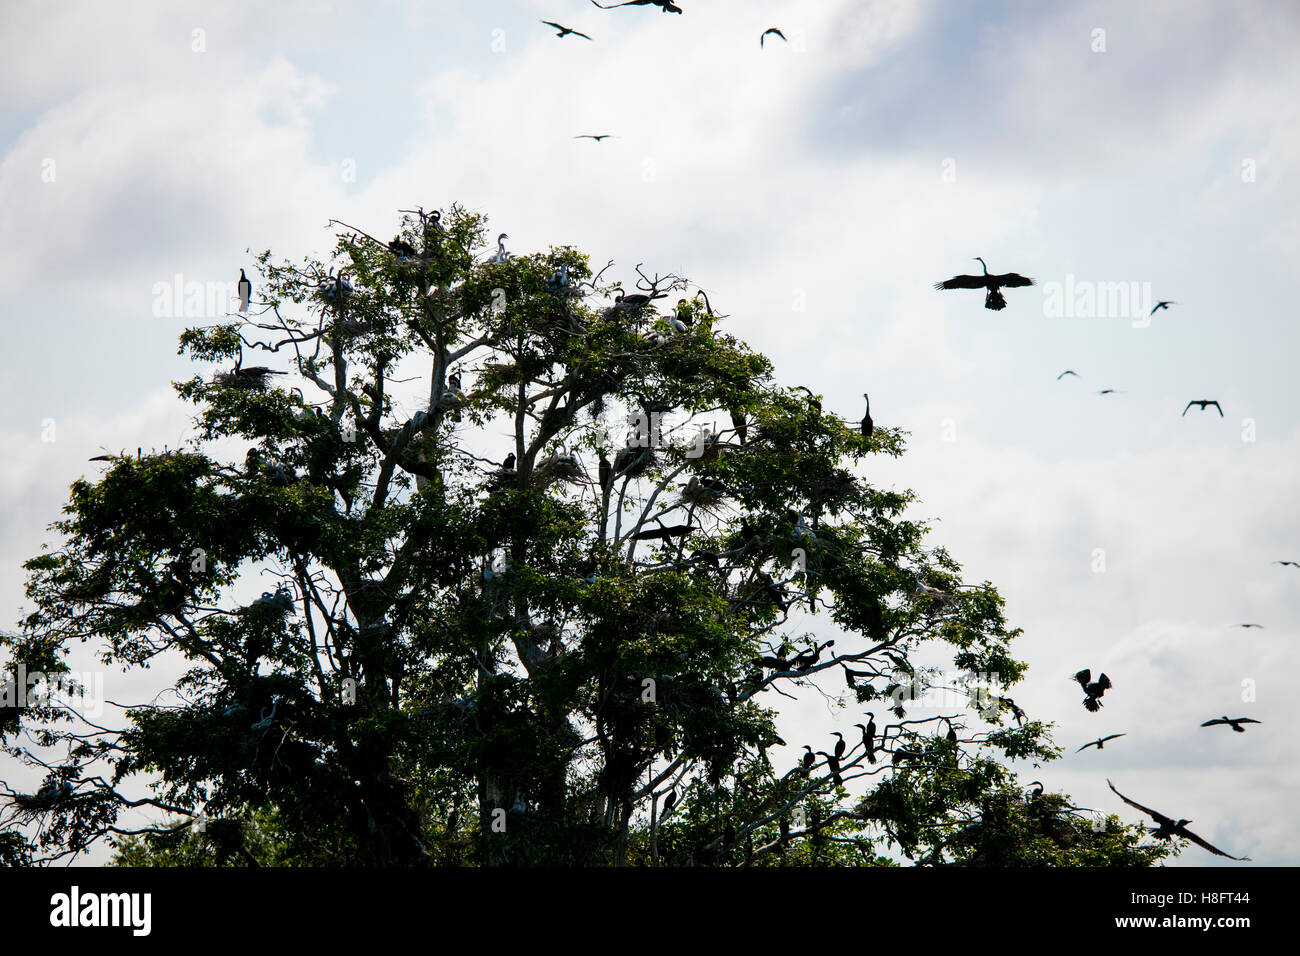 Prek Toal Bird Sanctuary, Tonle Sap Lake, Cambodia Stock Photo